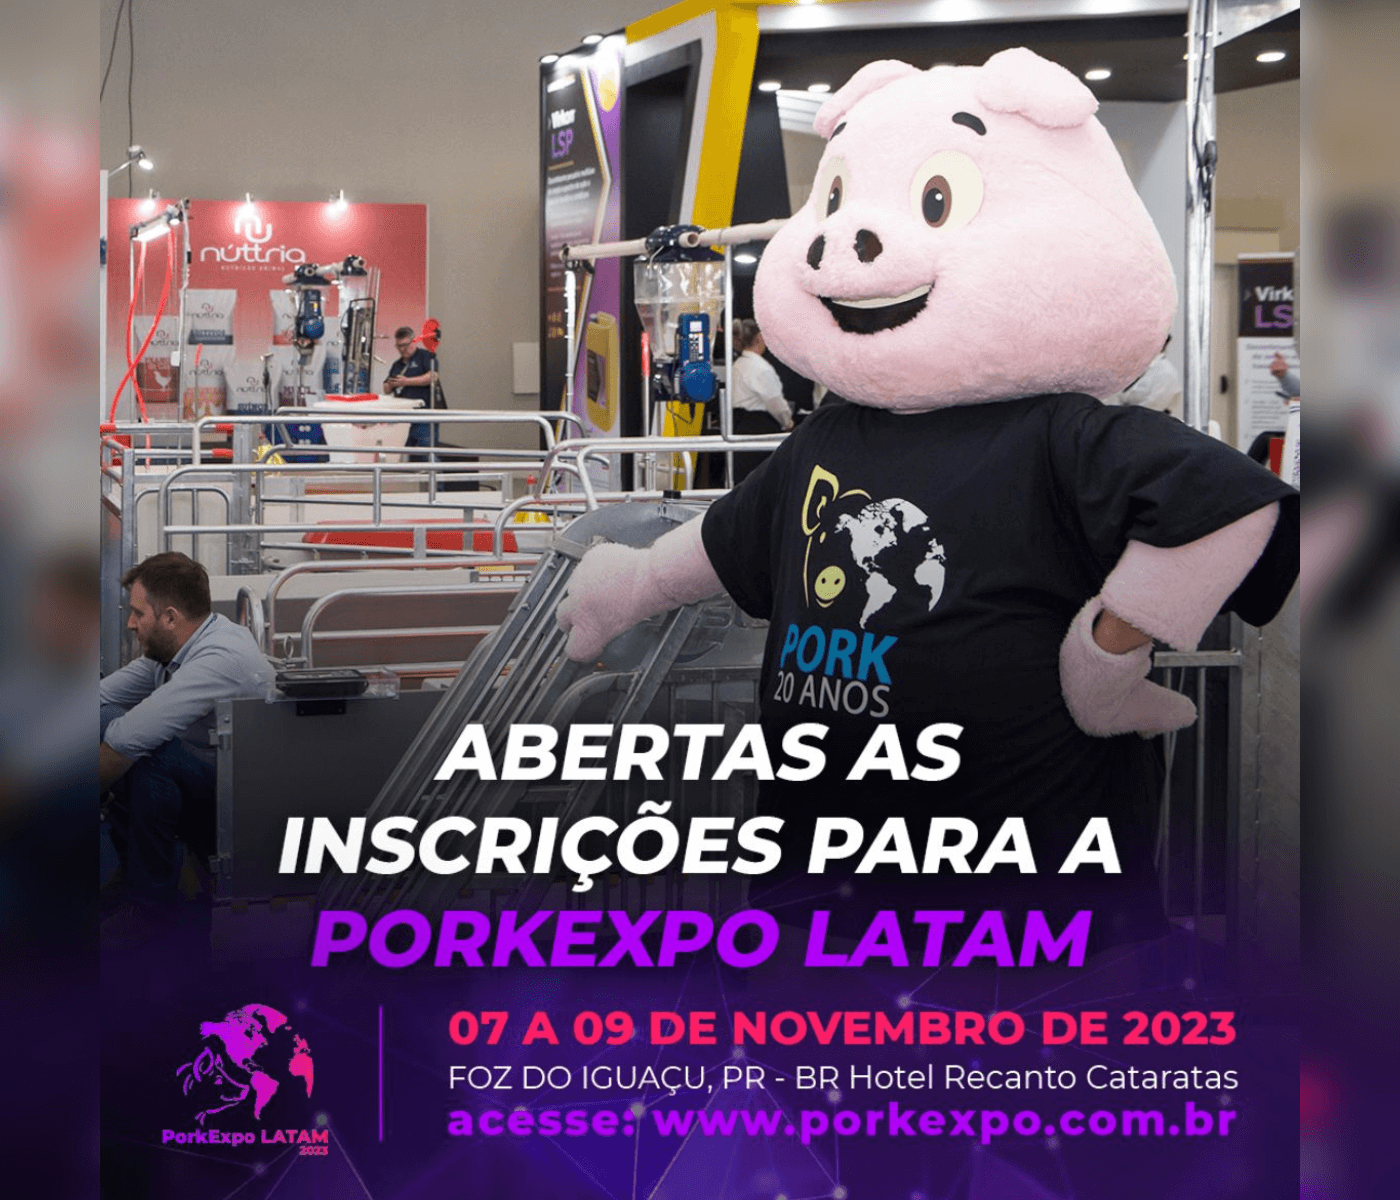 Estão abertas as inscrições para a XI PorkExpo LATAM 2023 e XI Congresso Internacional de Suinocultura